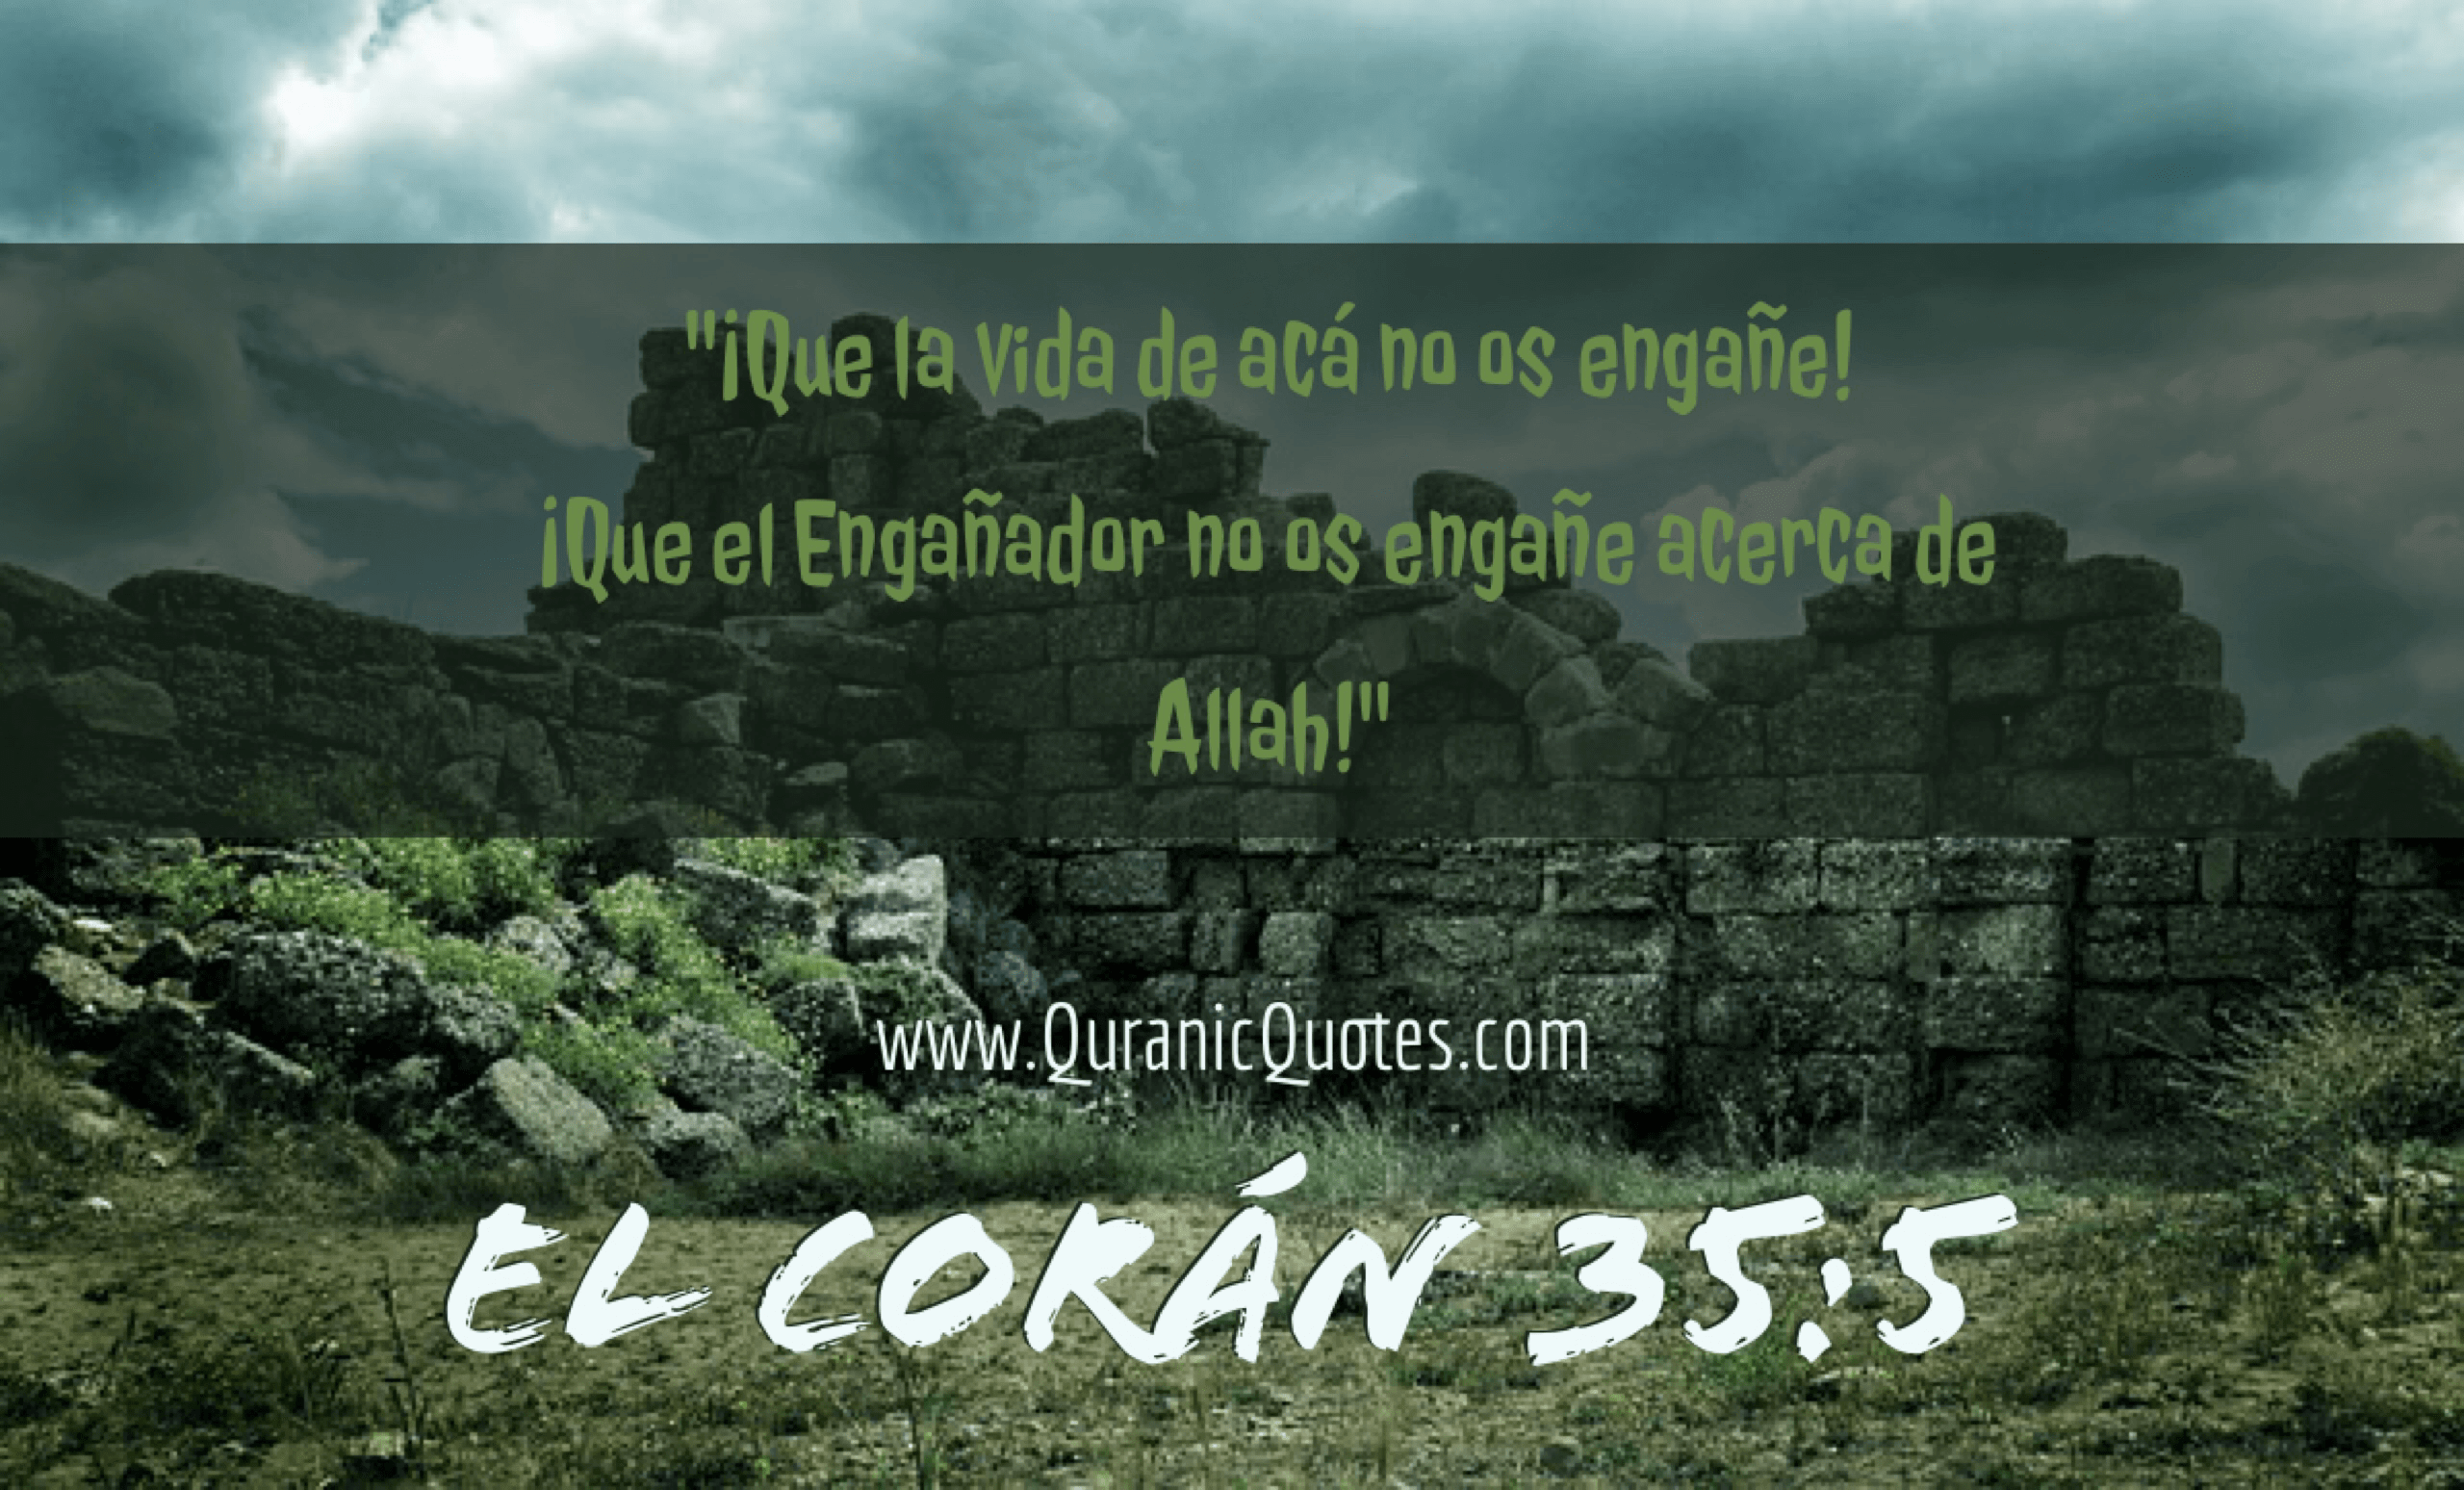 Quranic Quotes Español #46